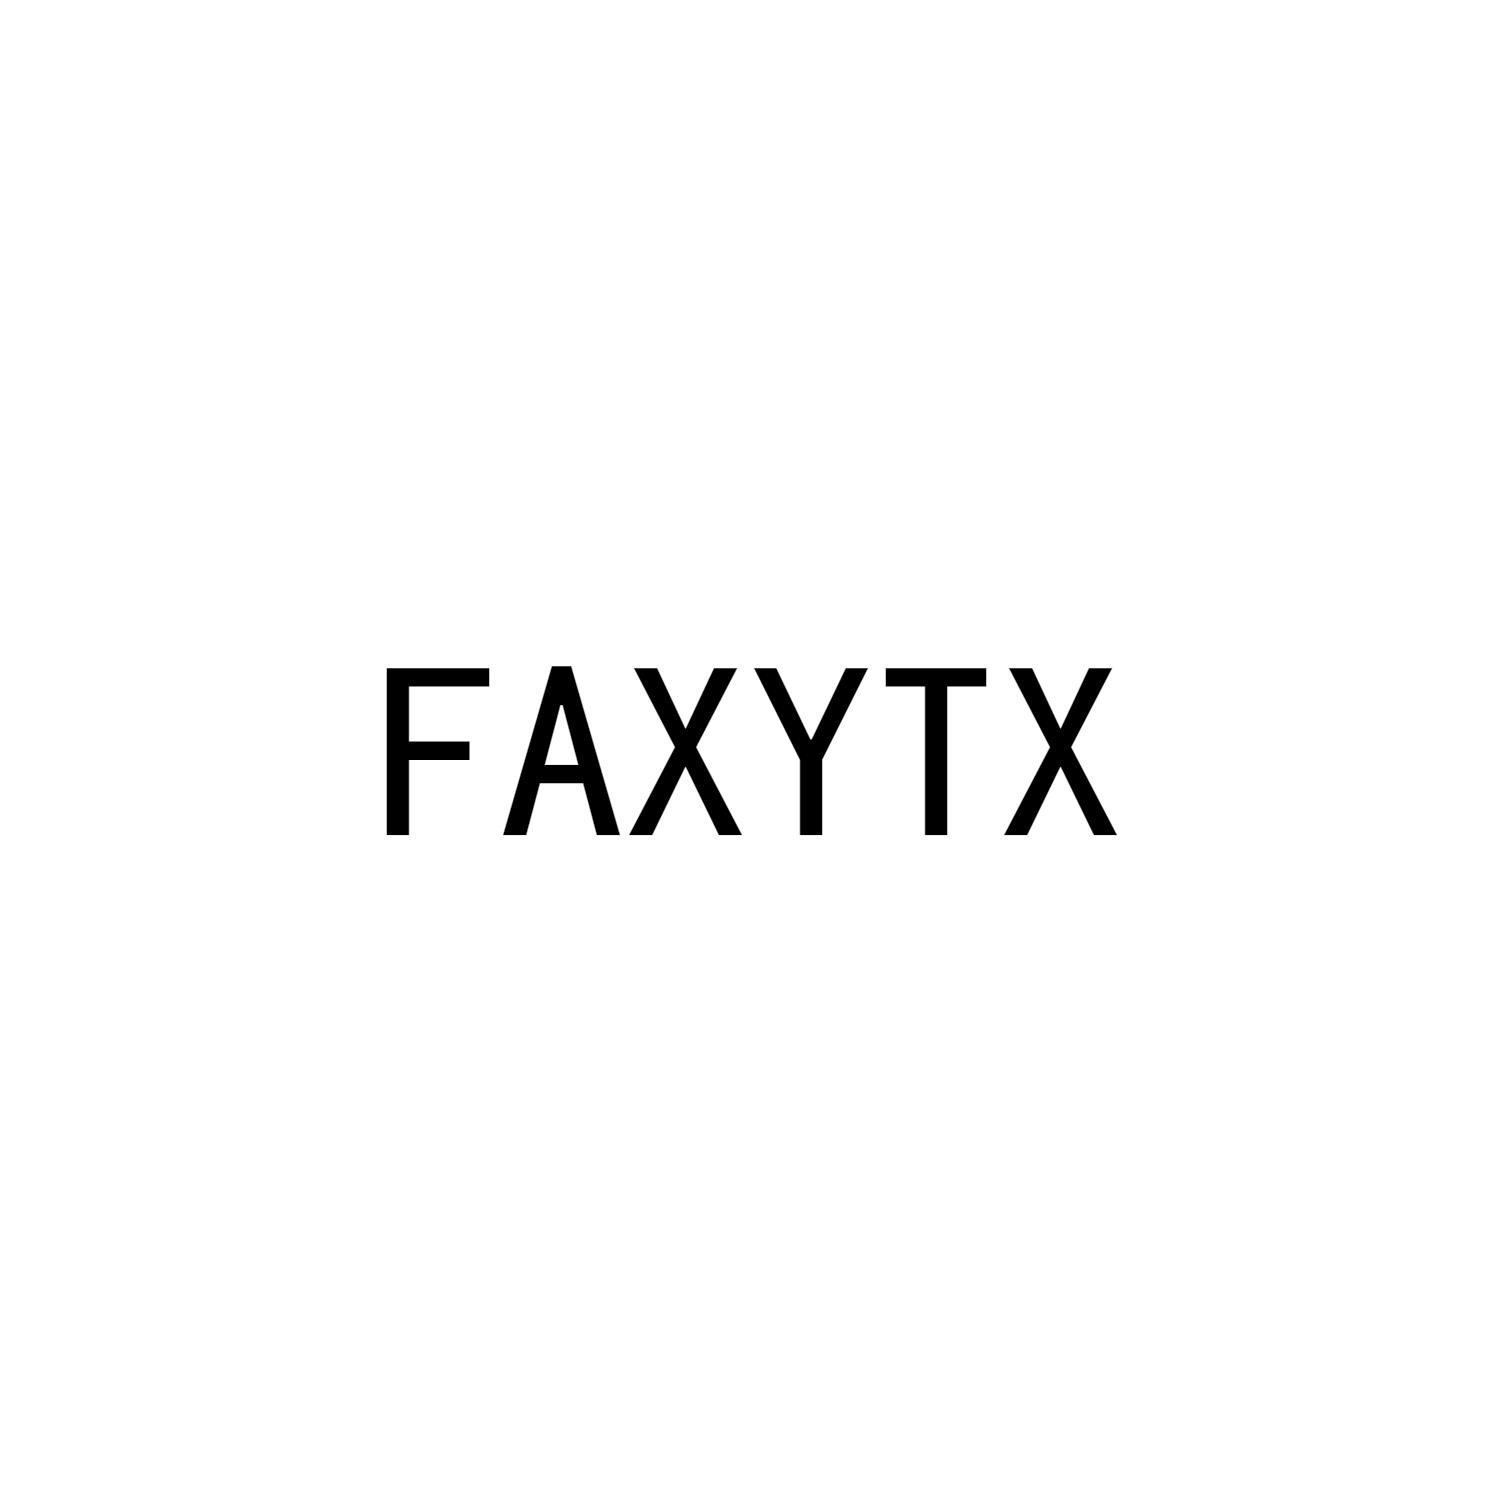 FAXYTX